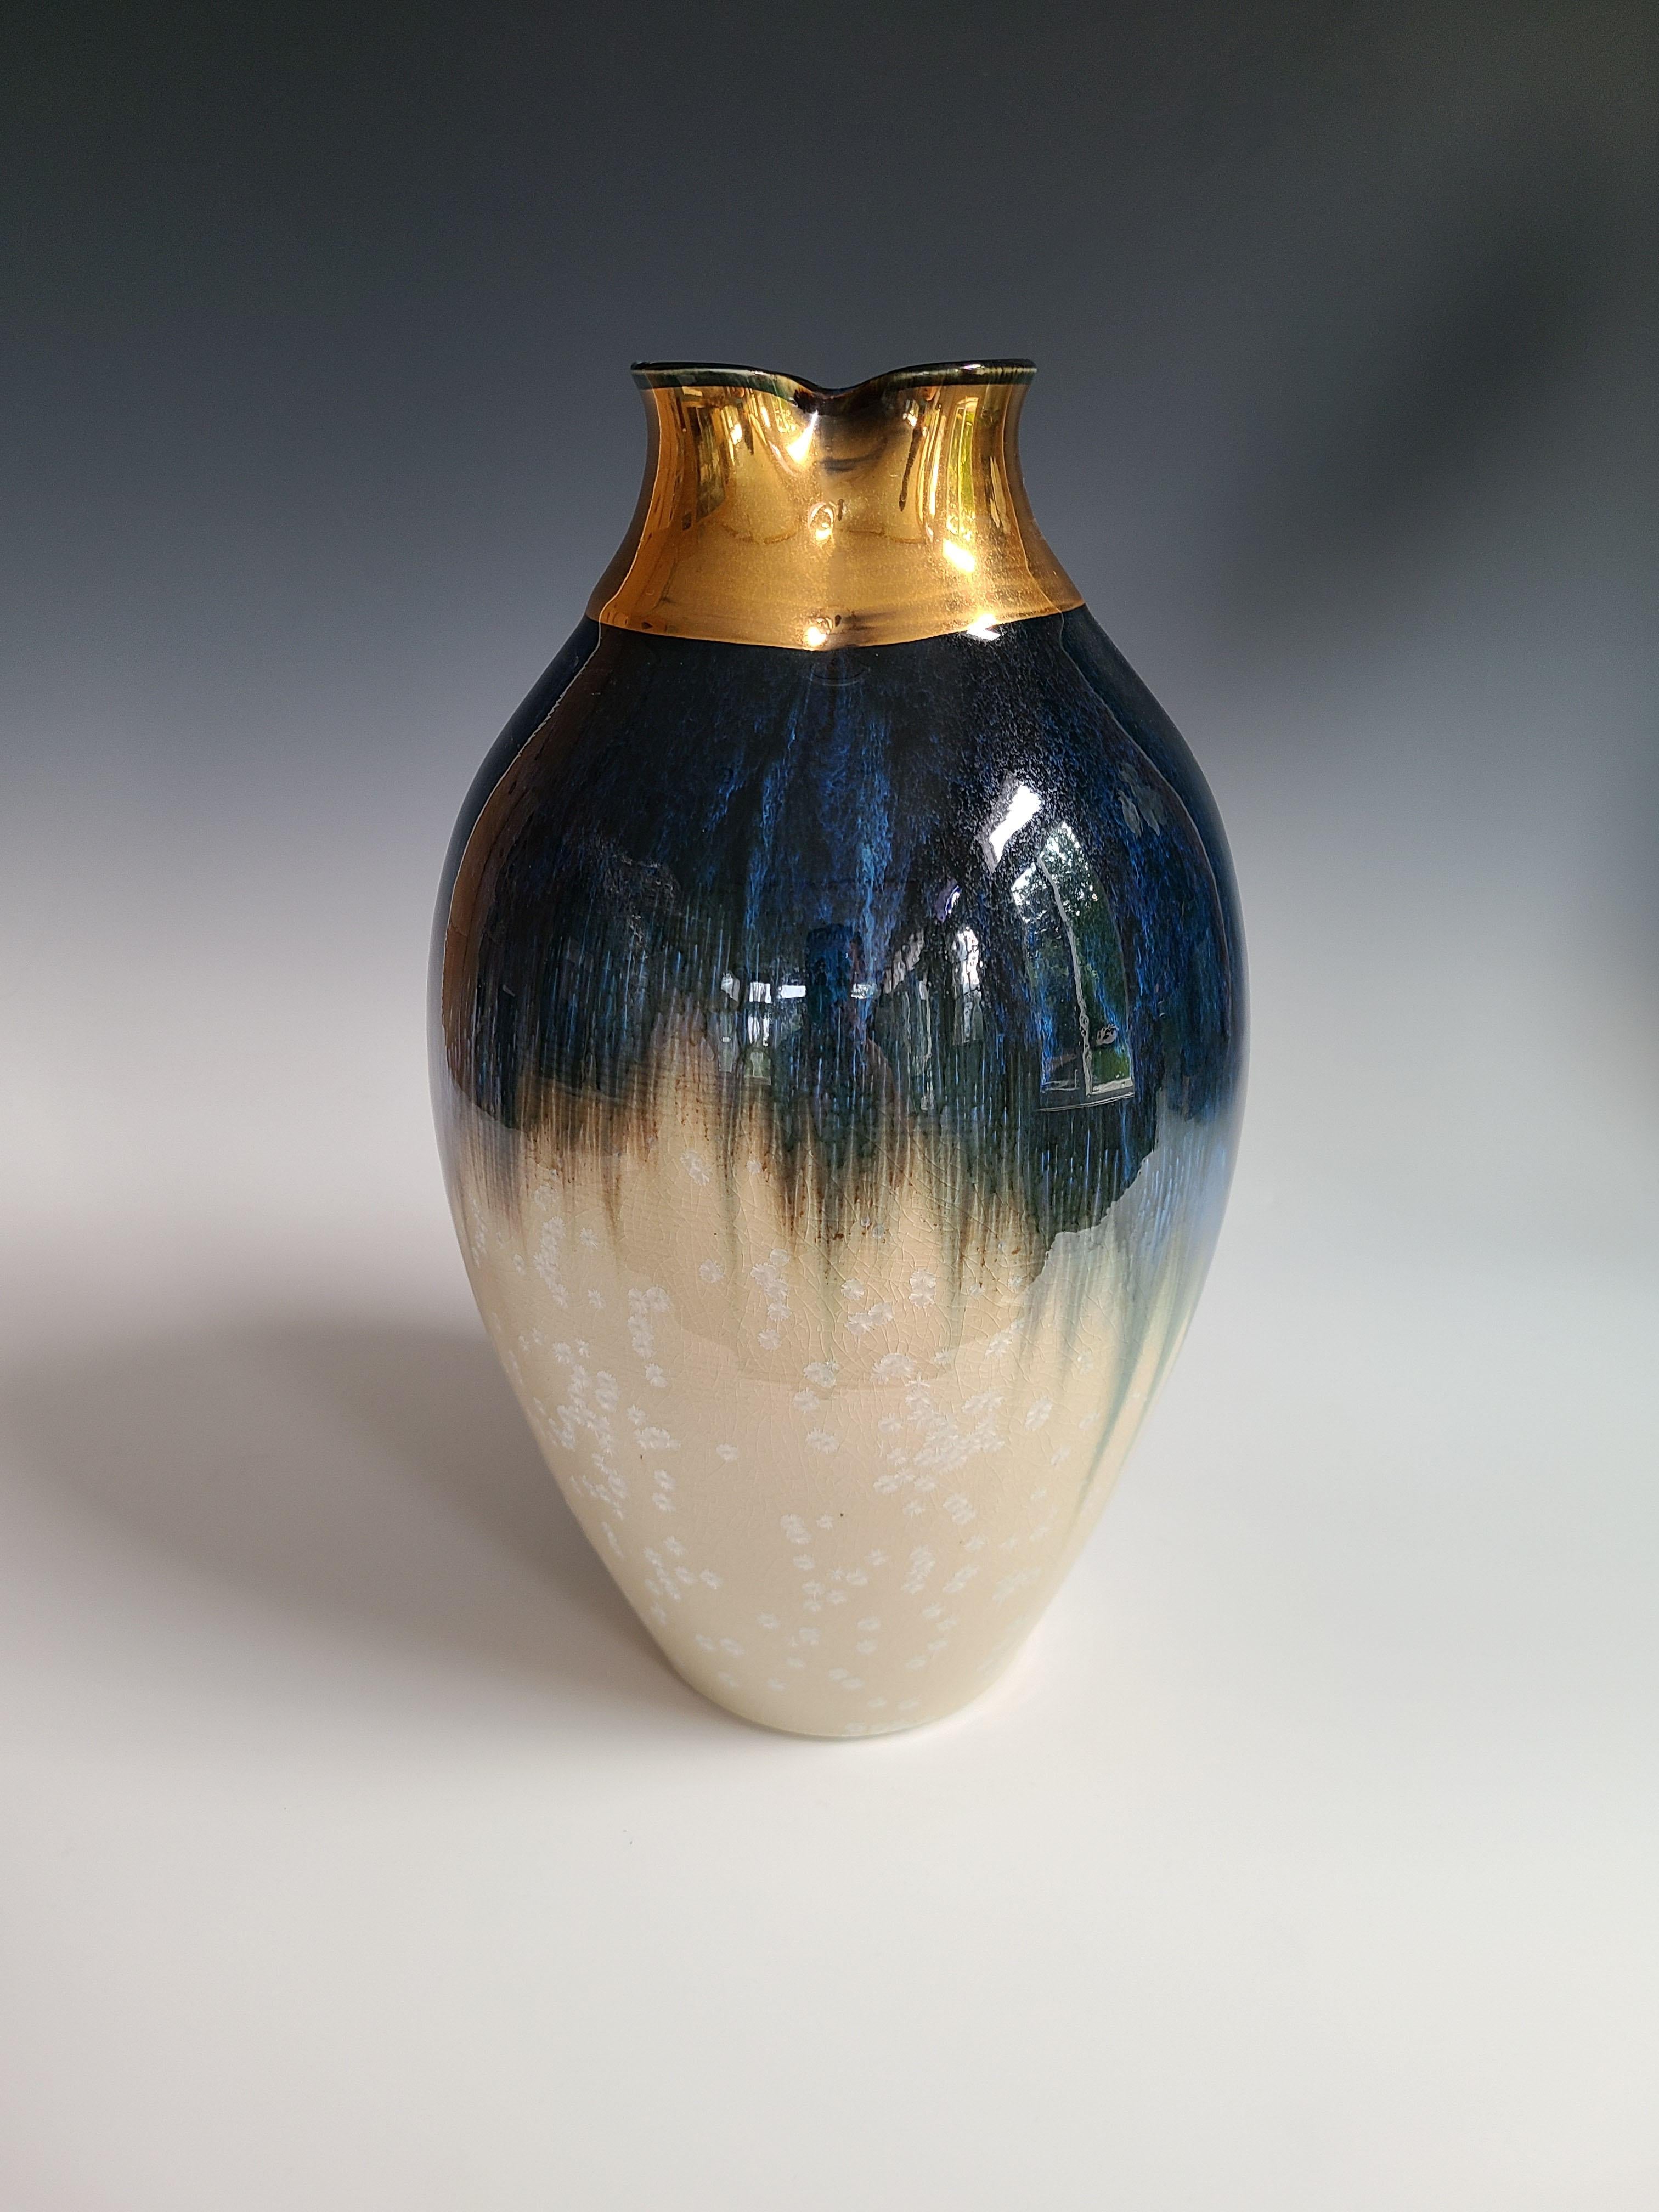 Jon Puzzuoli Abstract Sculpture - "Queen Hepburn, " Abstract Ceramic Vase